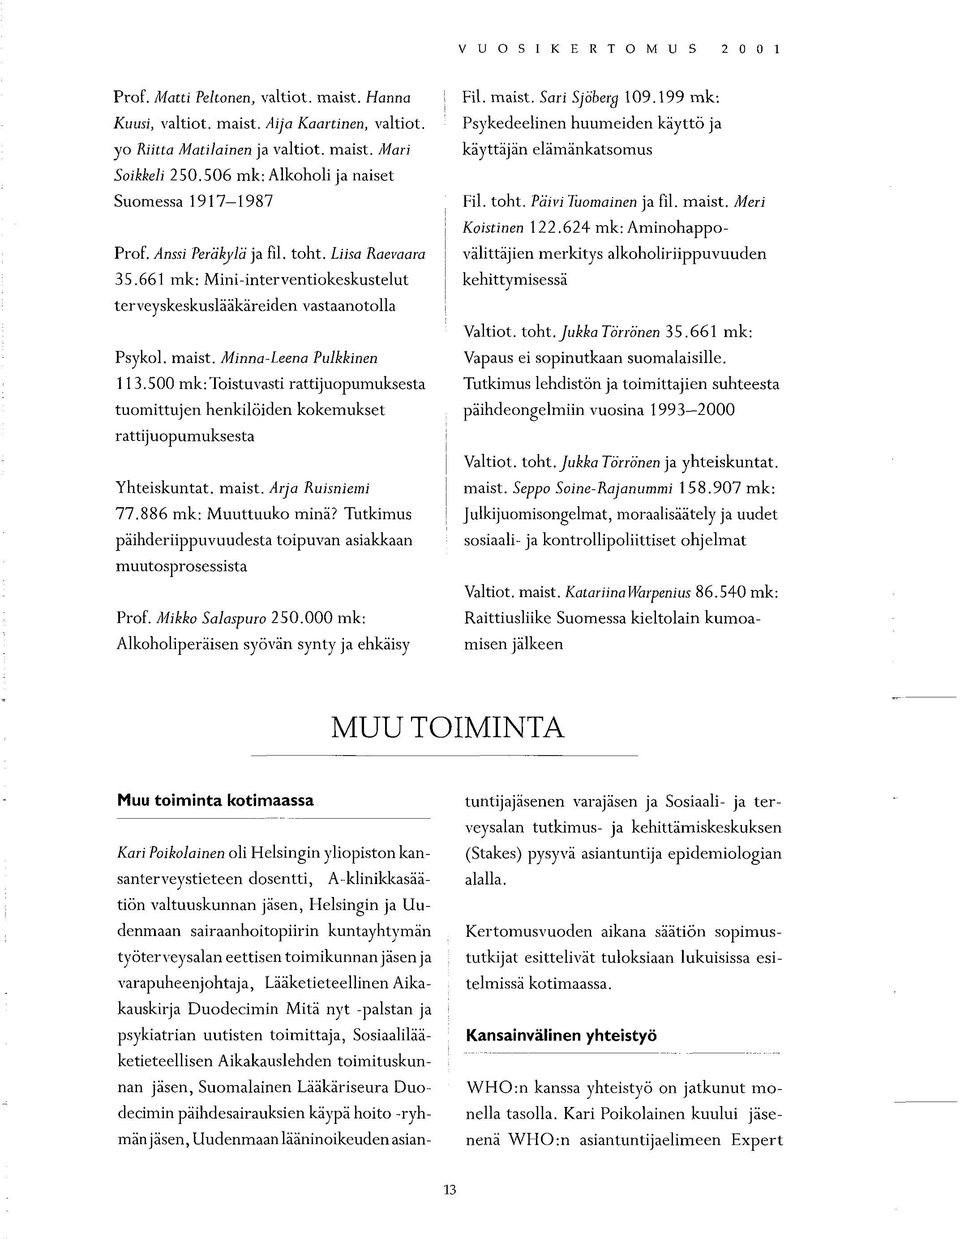 Minna-Leena Pulkkinen 113.500 mk:toistuvasti rattijuopumuksesta tuomittujen henkilöiden kokemukset rattijuopumuksesta Yhteiskuntat, maist. Arja Ruisniemi 77.886 mk: Muuttuuko minä?